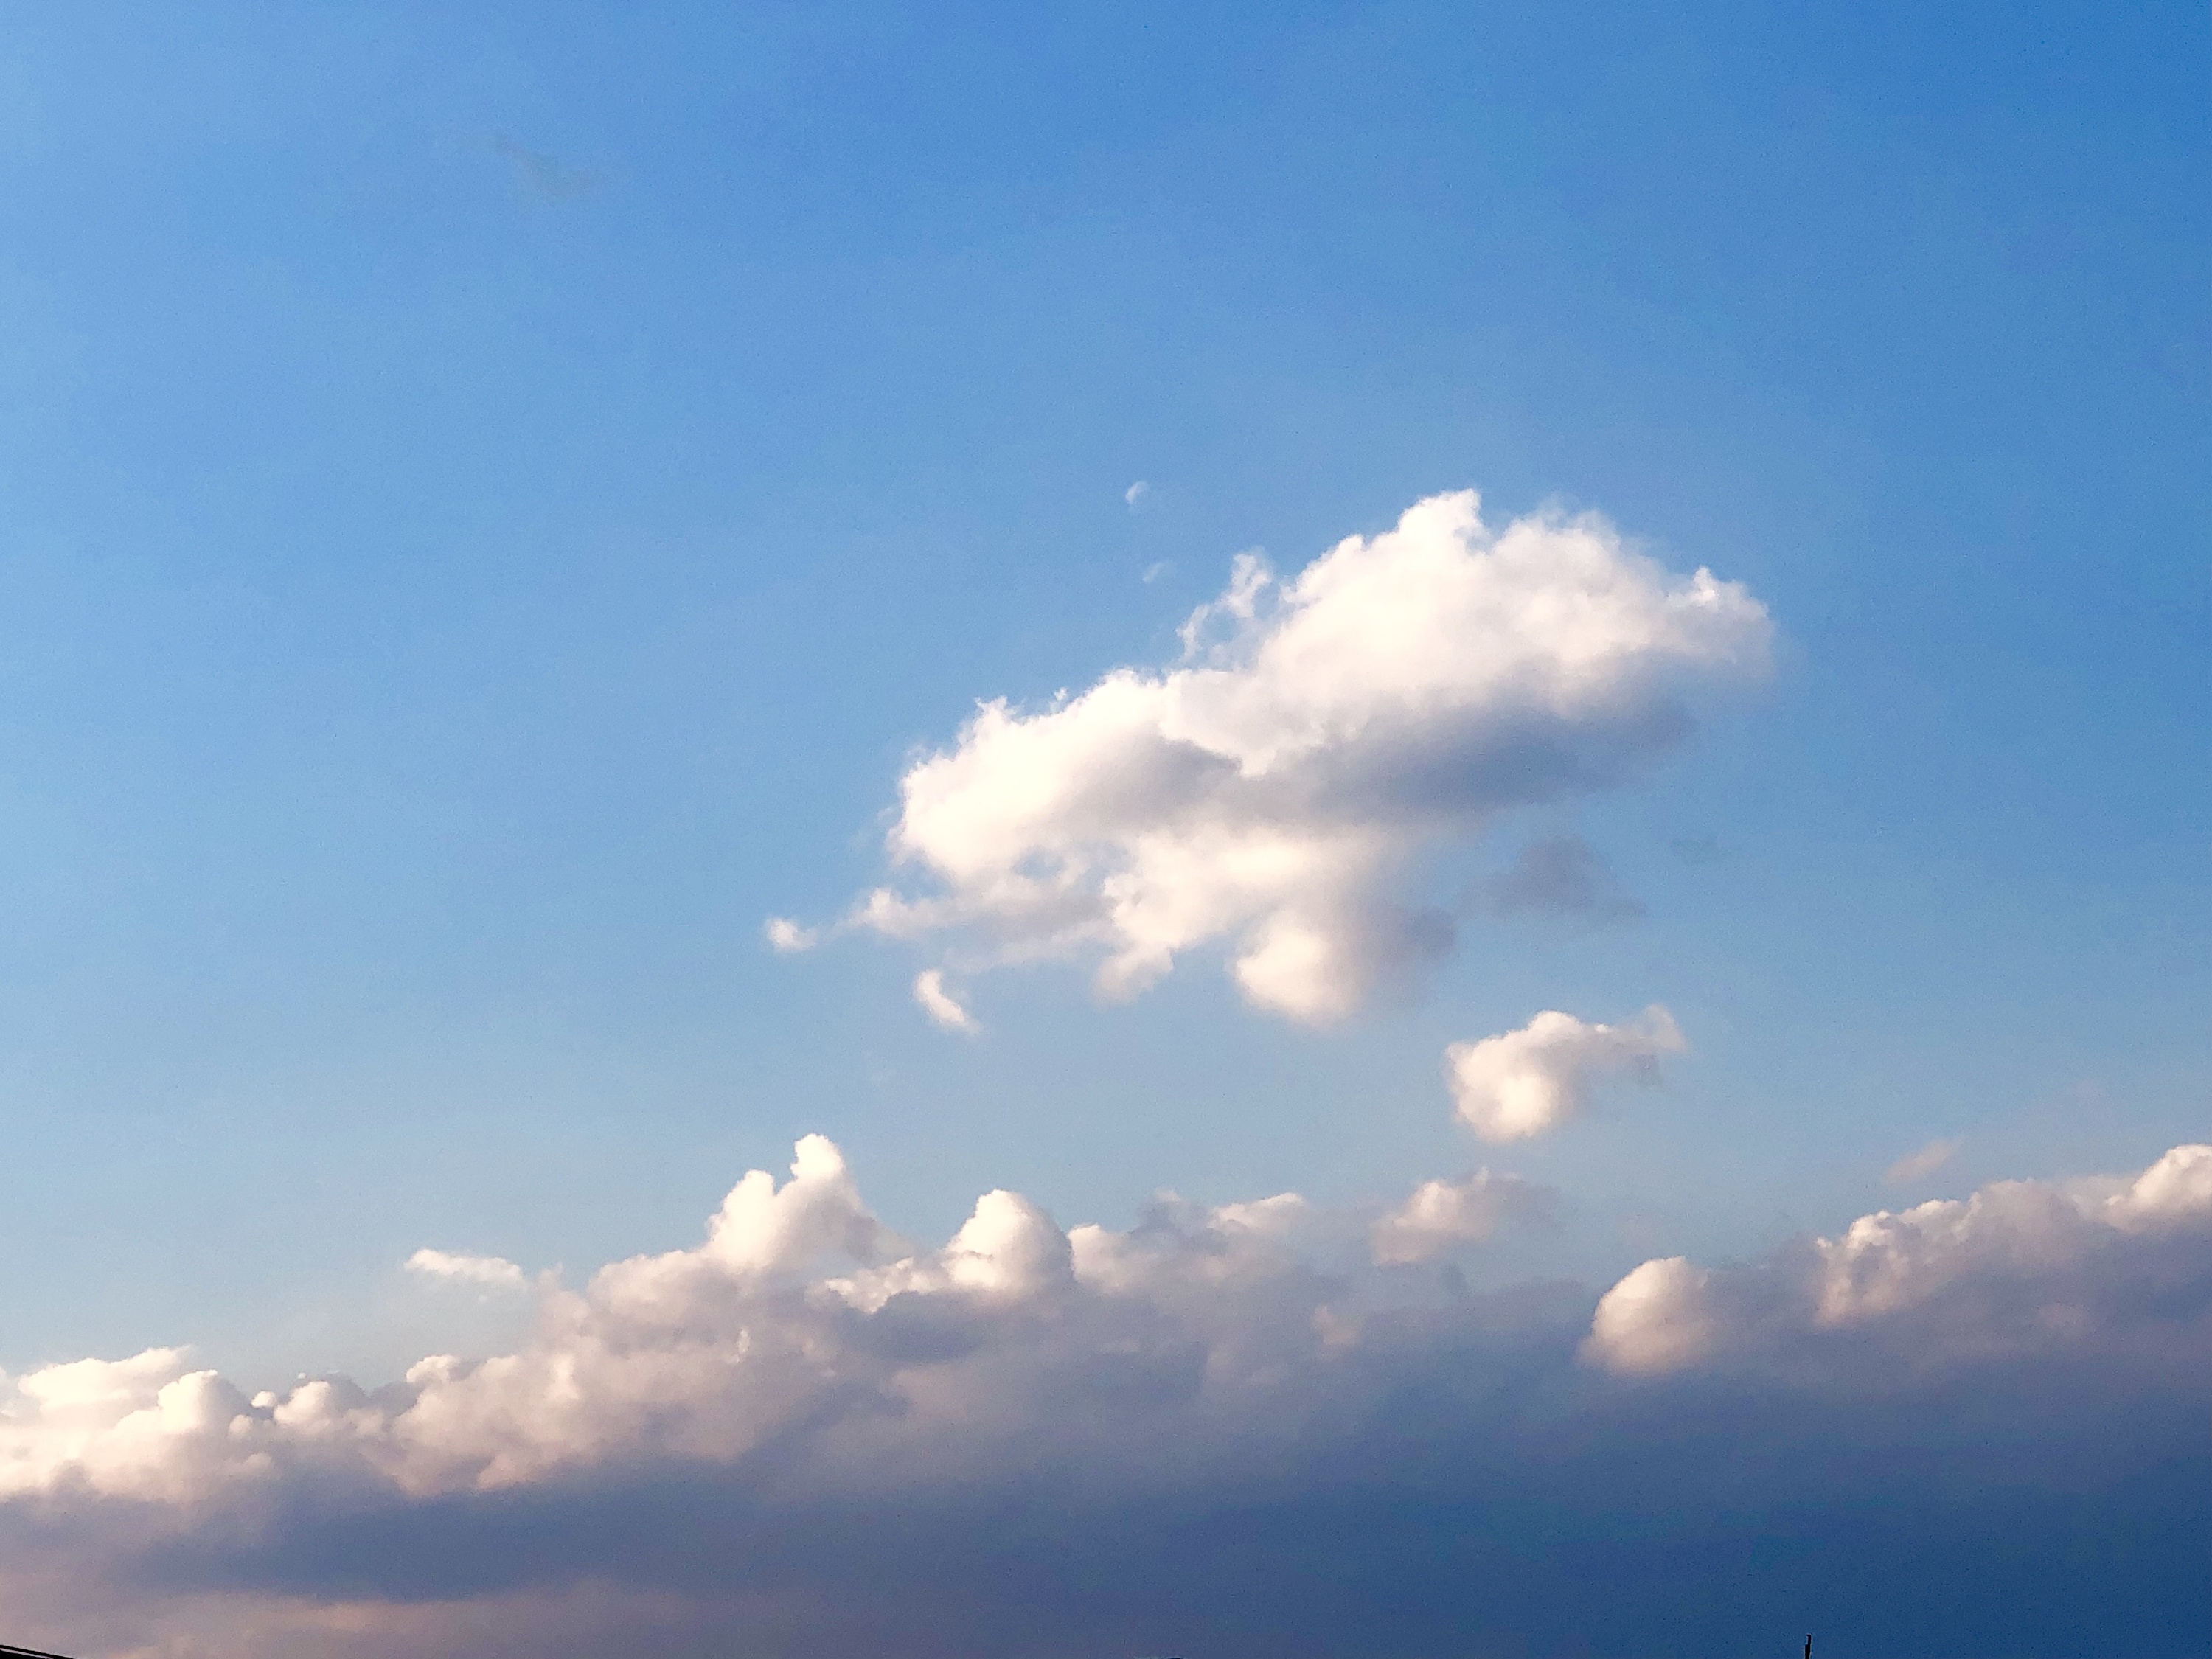 图片素材 : 地平线, 天空, 阳光, 多云的, 大气层, 白天, 天气, 积云, cloudscape, 气象现象, 地球大气 4752x3168 - - 143455 - 素材中国, 高清 ...